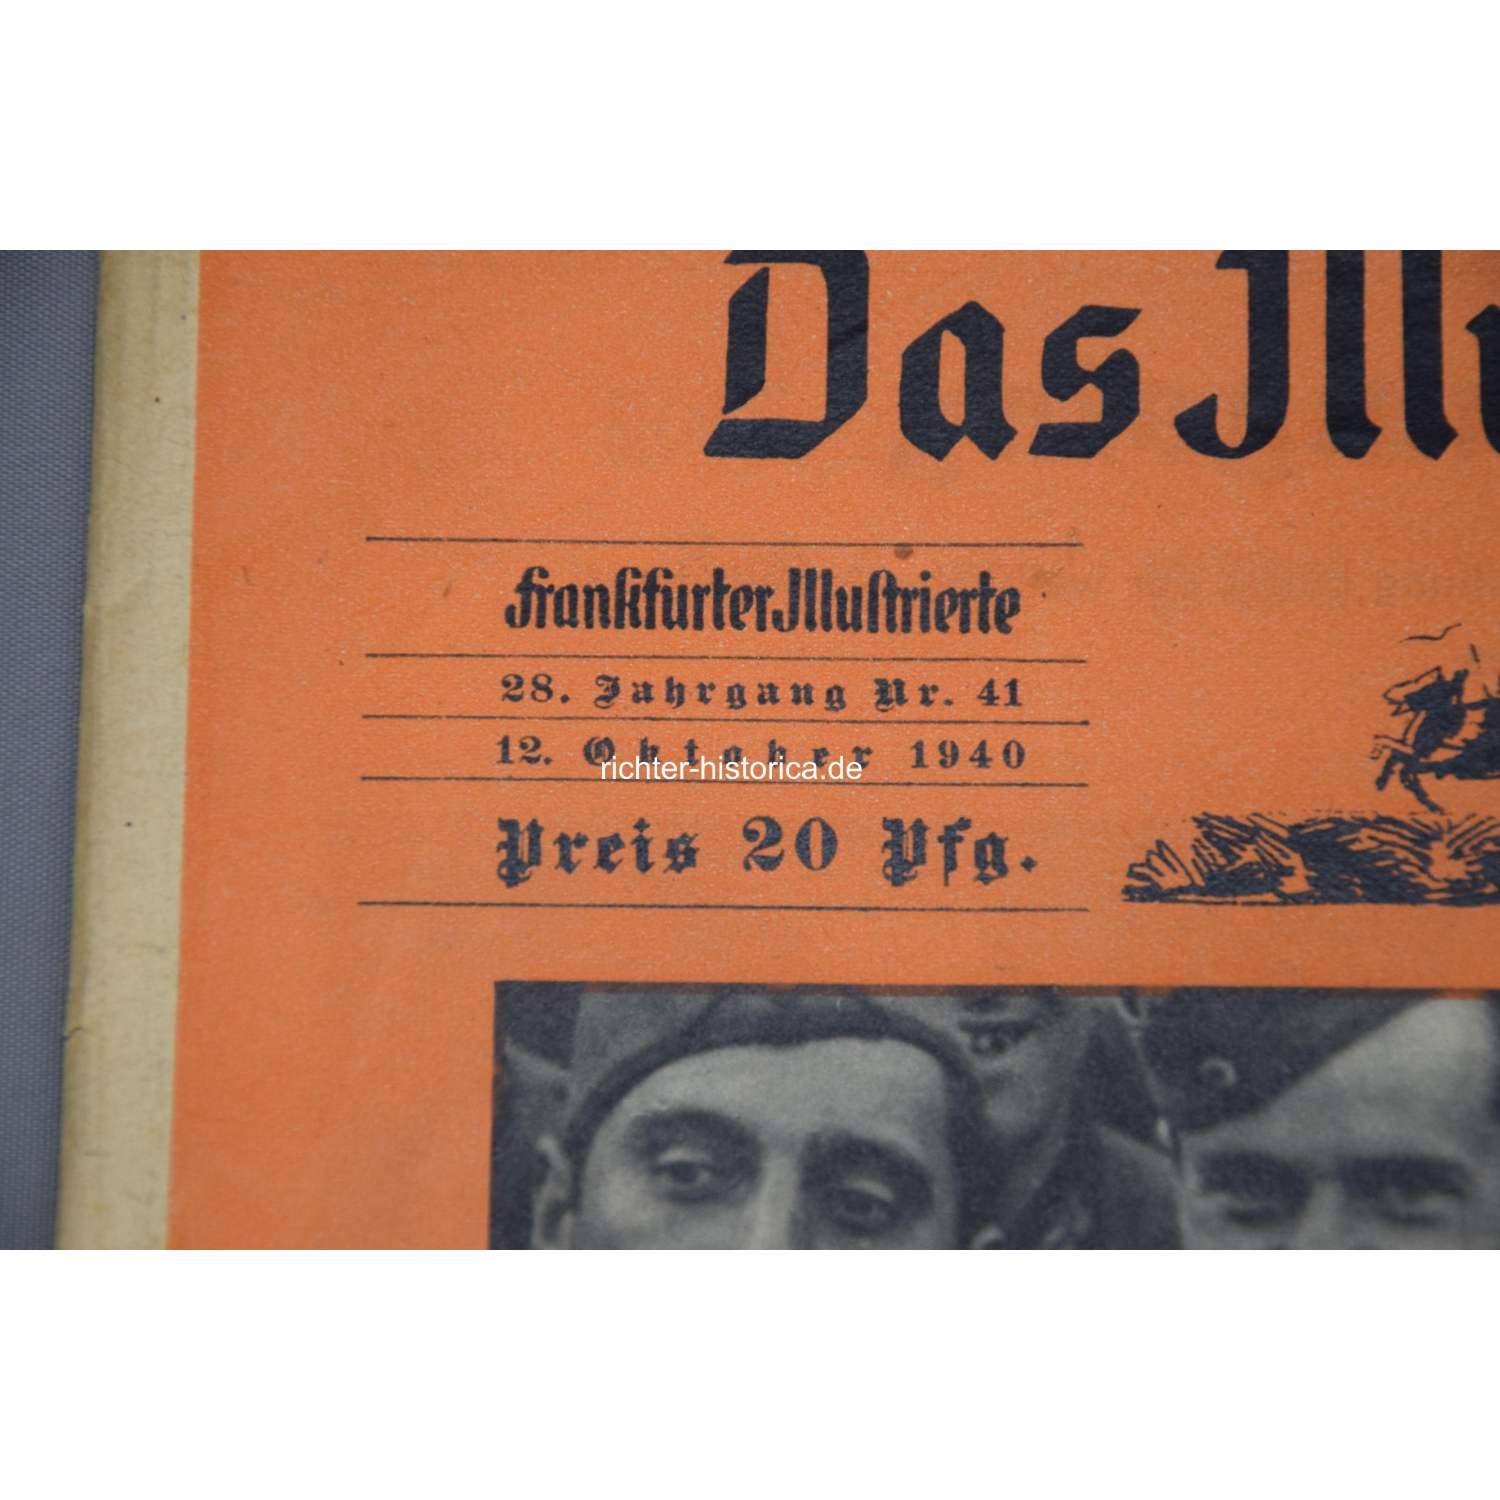 Konvolut 2 Zeitschriften "Das illustrierte Blatt nr.40/41 1940